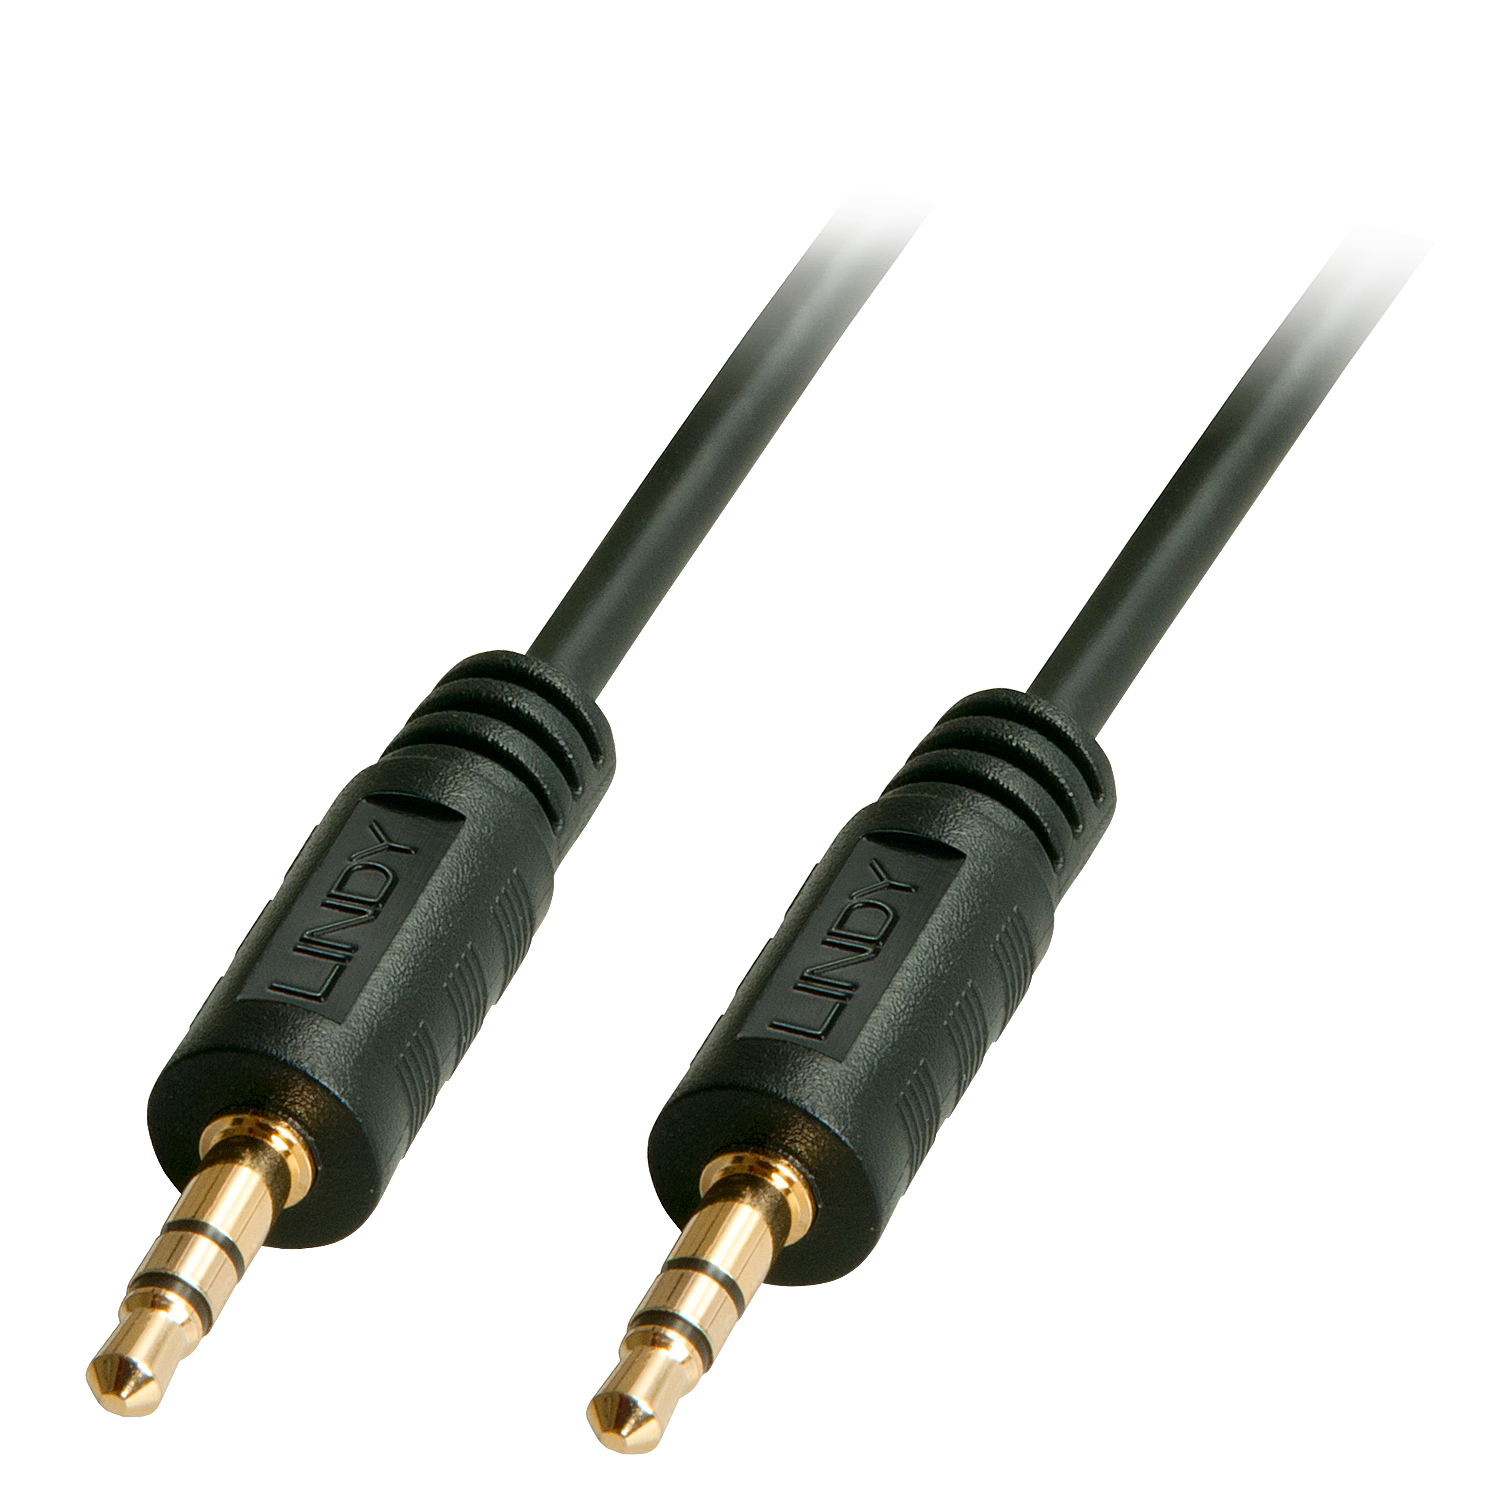 Photos - Cable (video, audio, USB) Lindy 1m Premium Audio 3.5mm Jack Cable 35641 